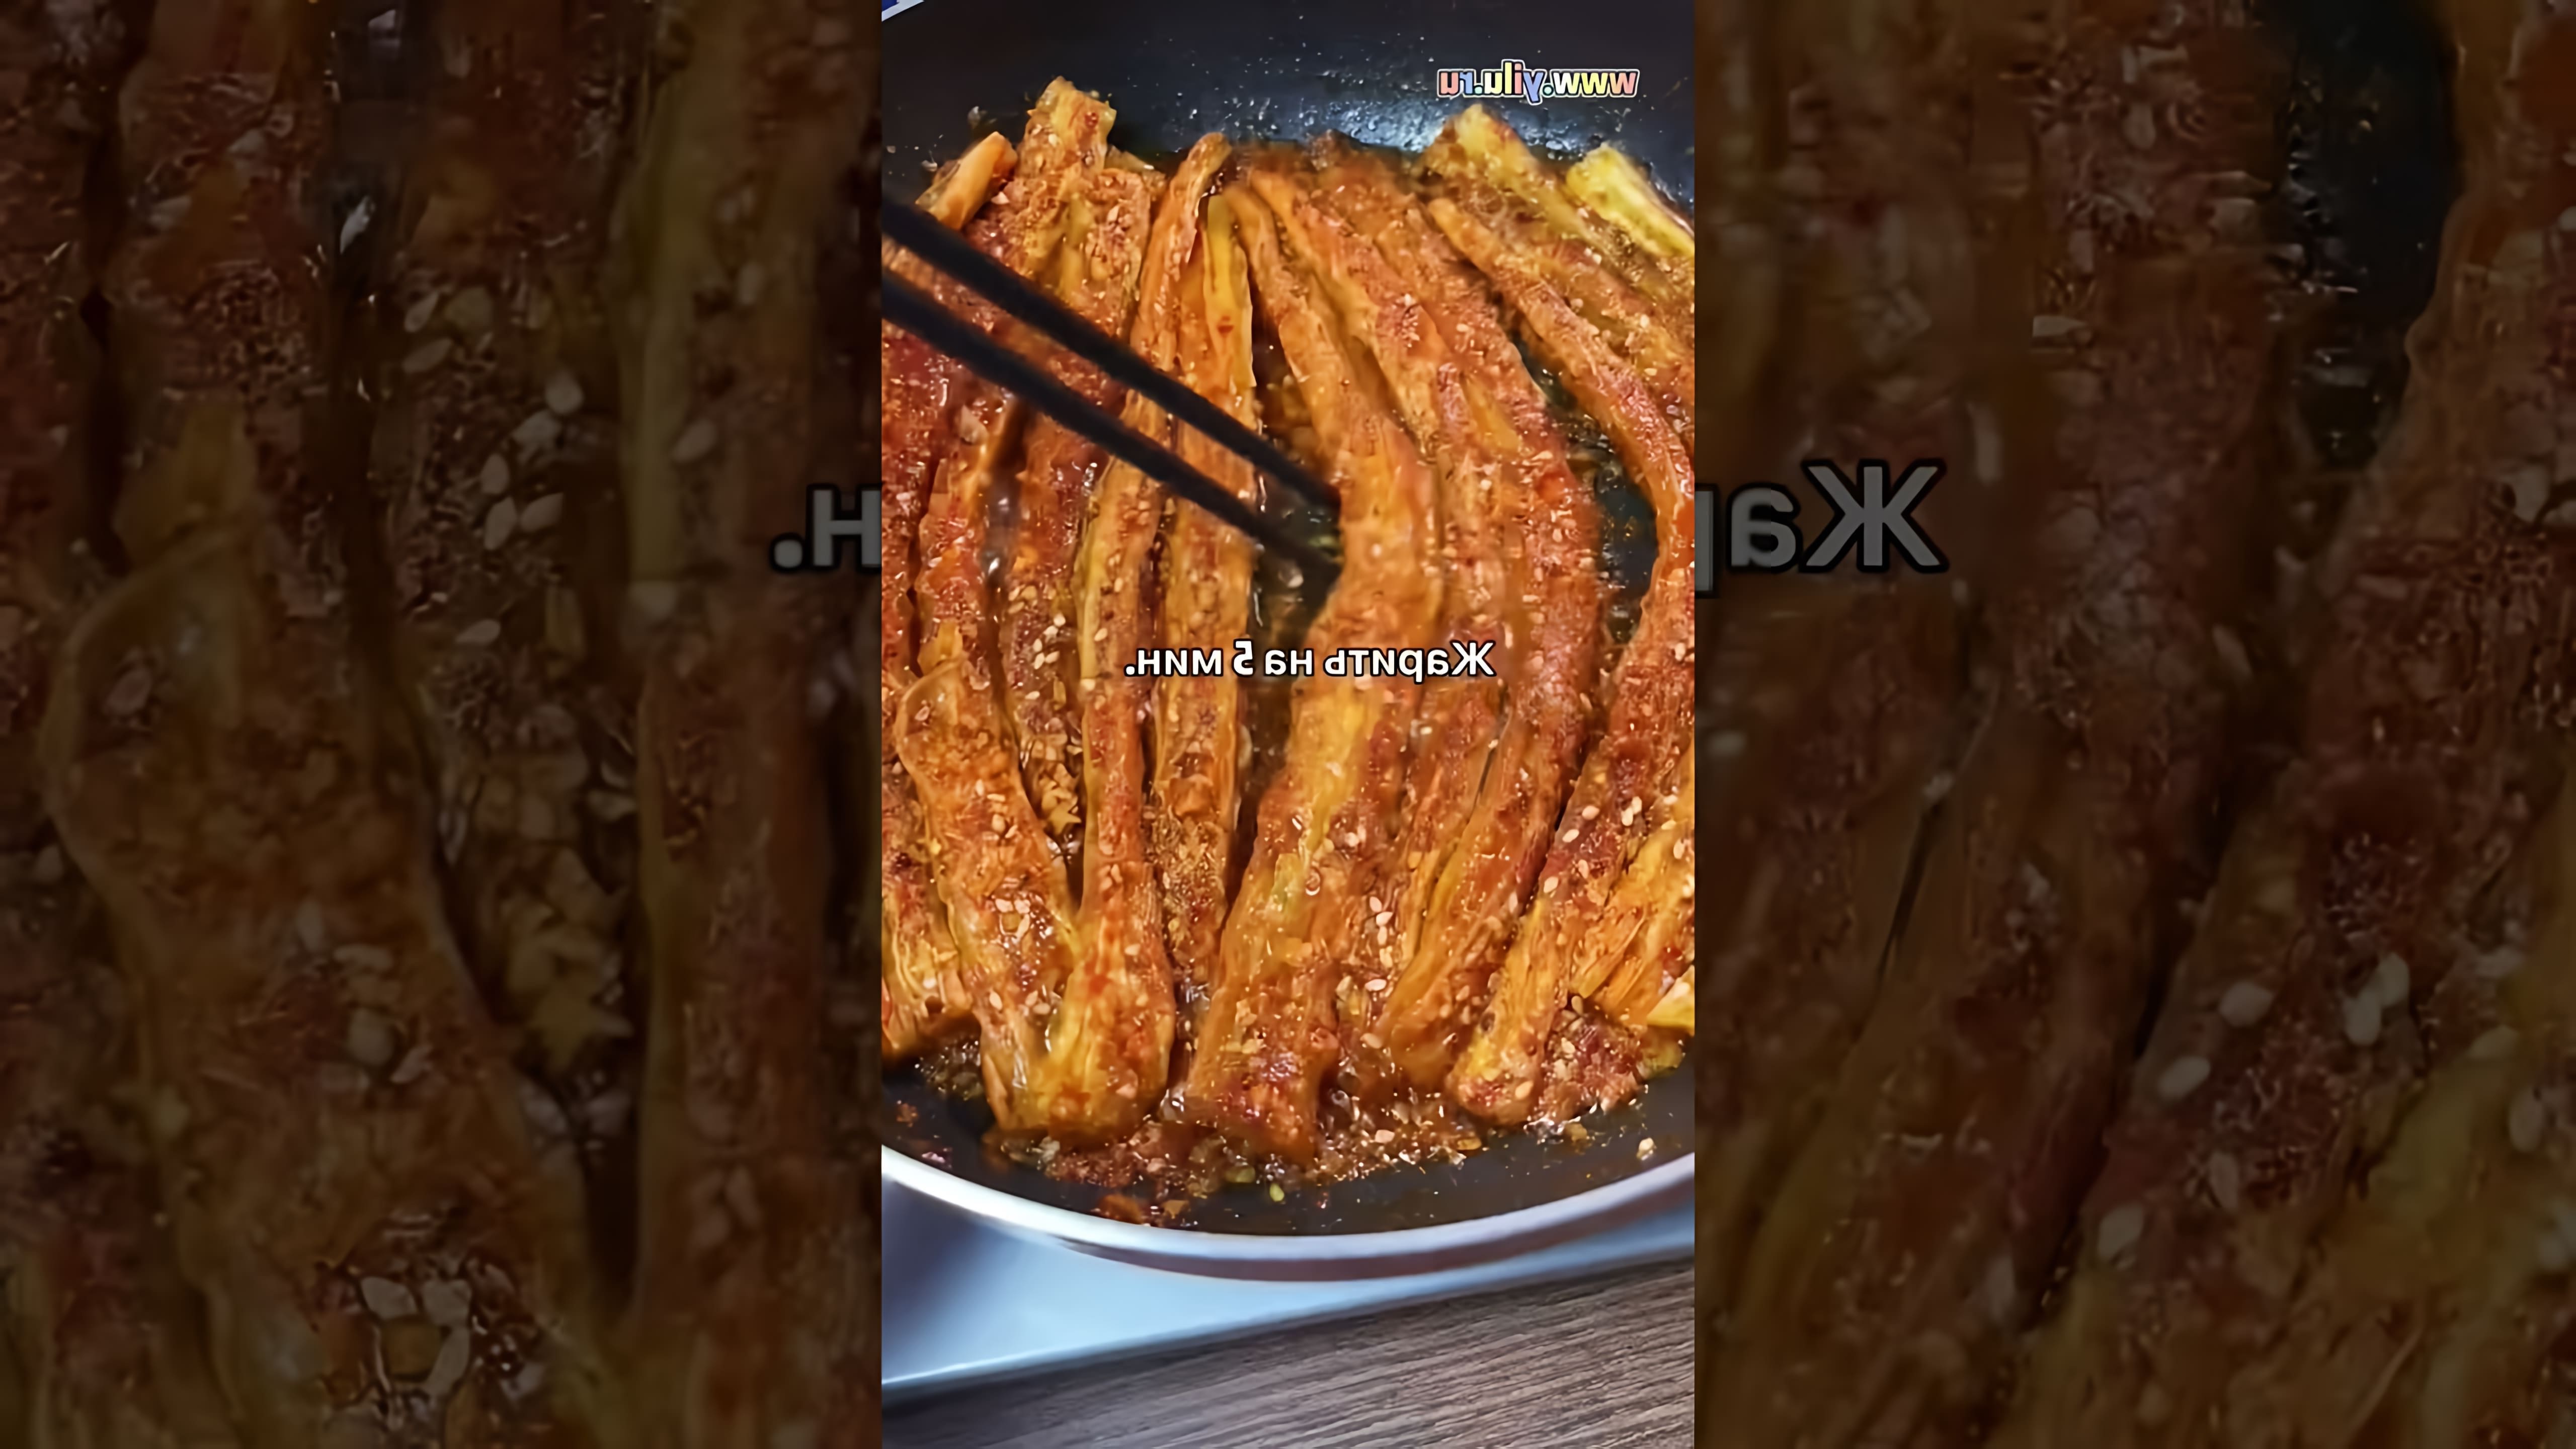 В этом видео демонстрируется процесс приготовления китайского блюда - жареной соевой спаржи